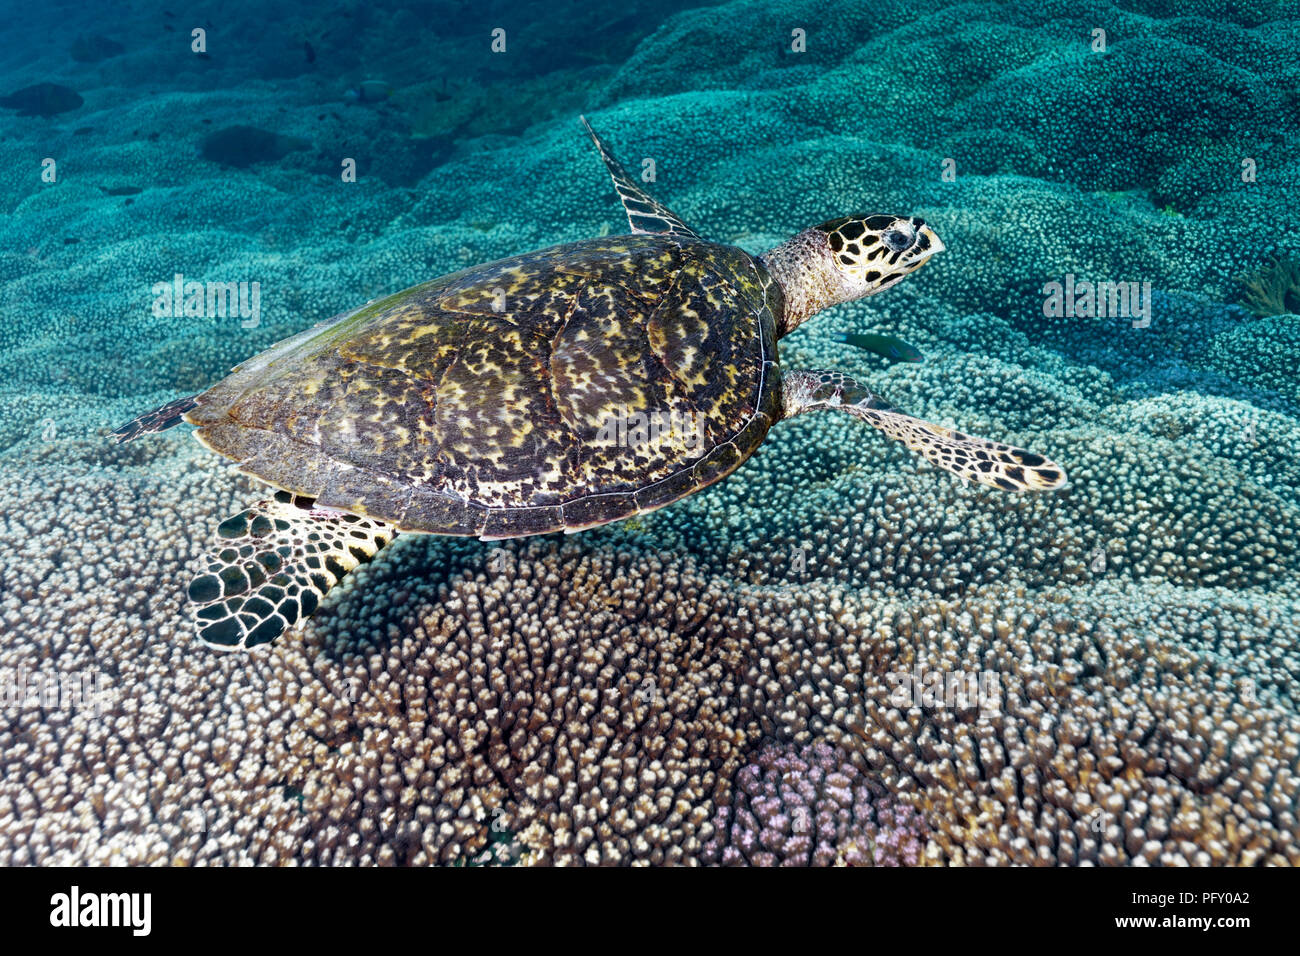 La tortue imbriquée (Eretmochelys imbricata), flotte au-dessus de coraux, la réserve naturelle des îles Daymaniyat, océan Indien Banque D'Images